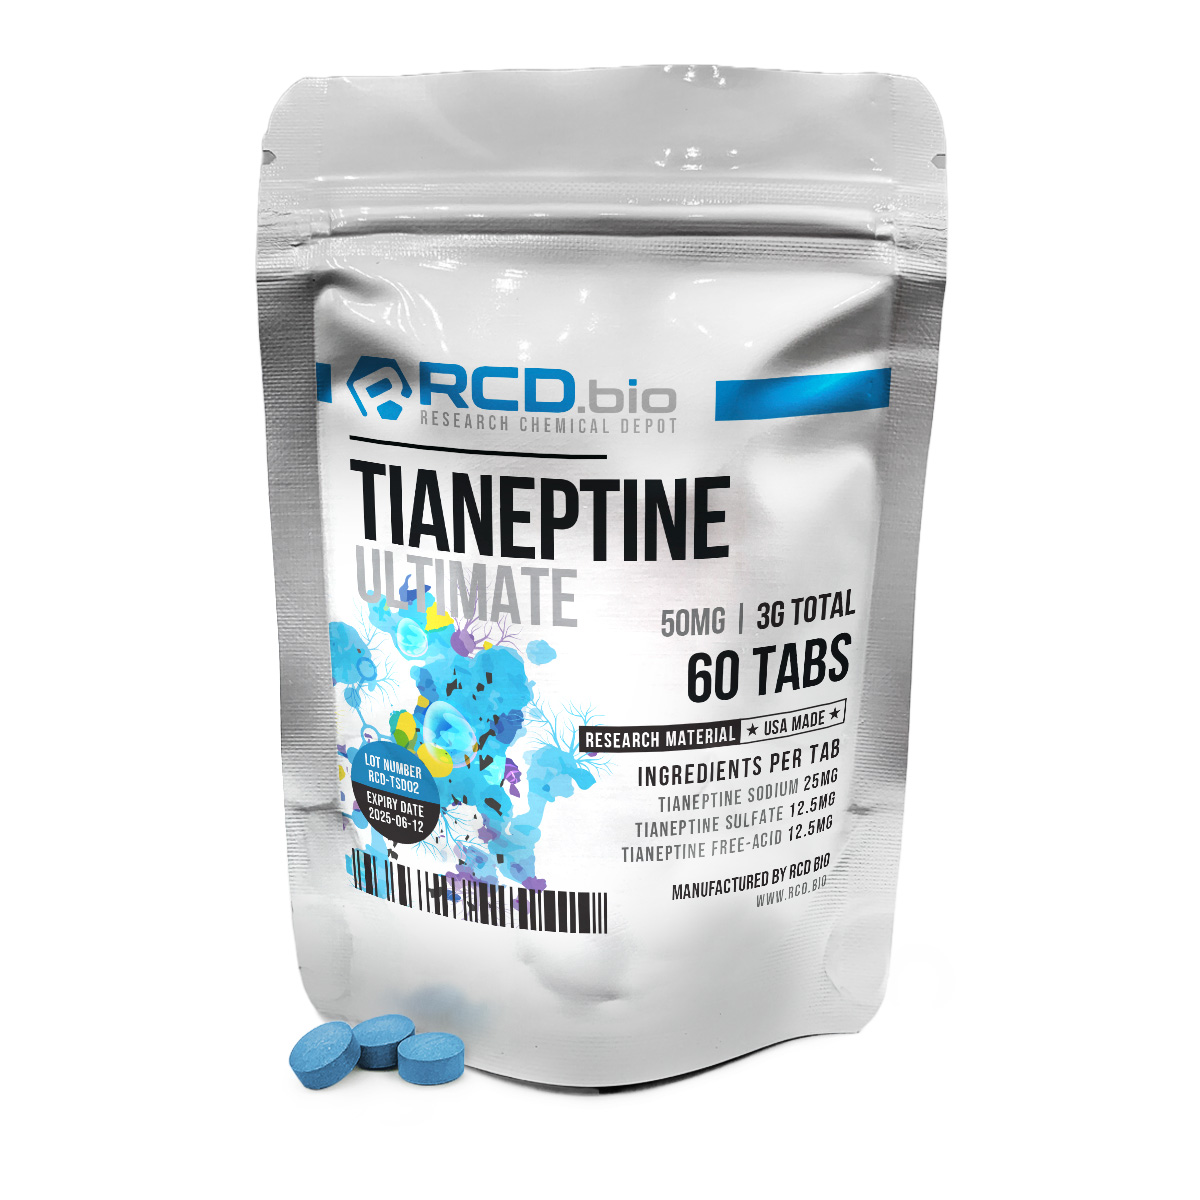 Tianeptine Ultimate 60ct | RCD.bio